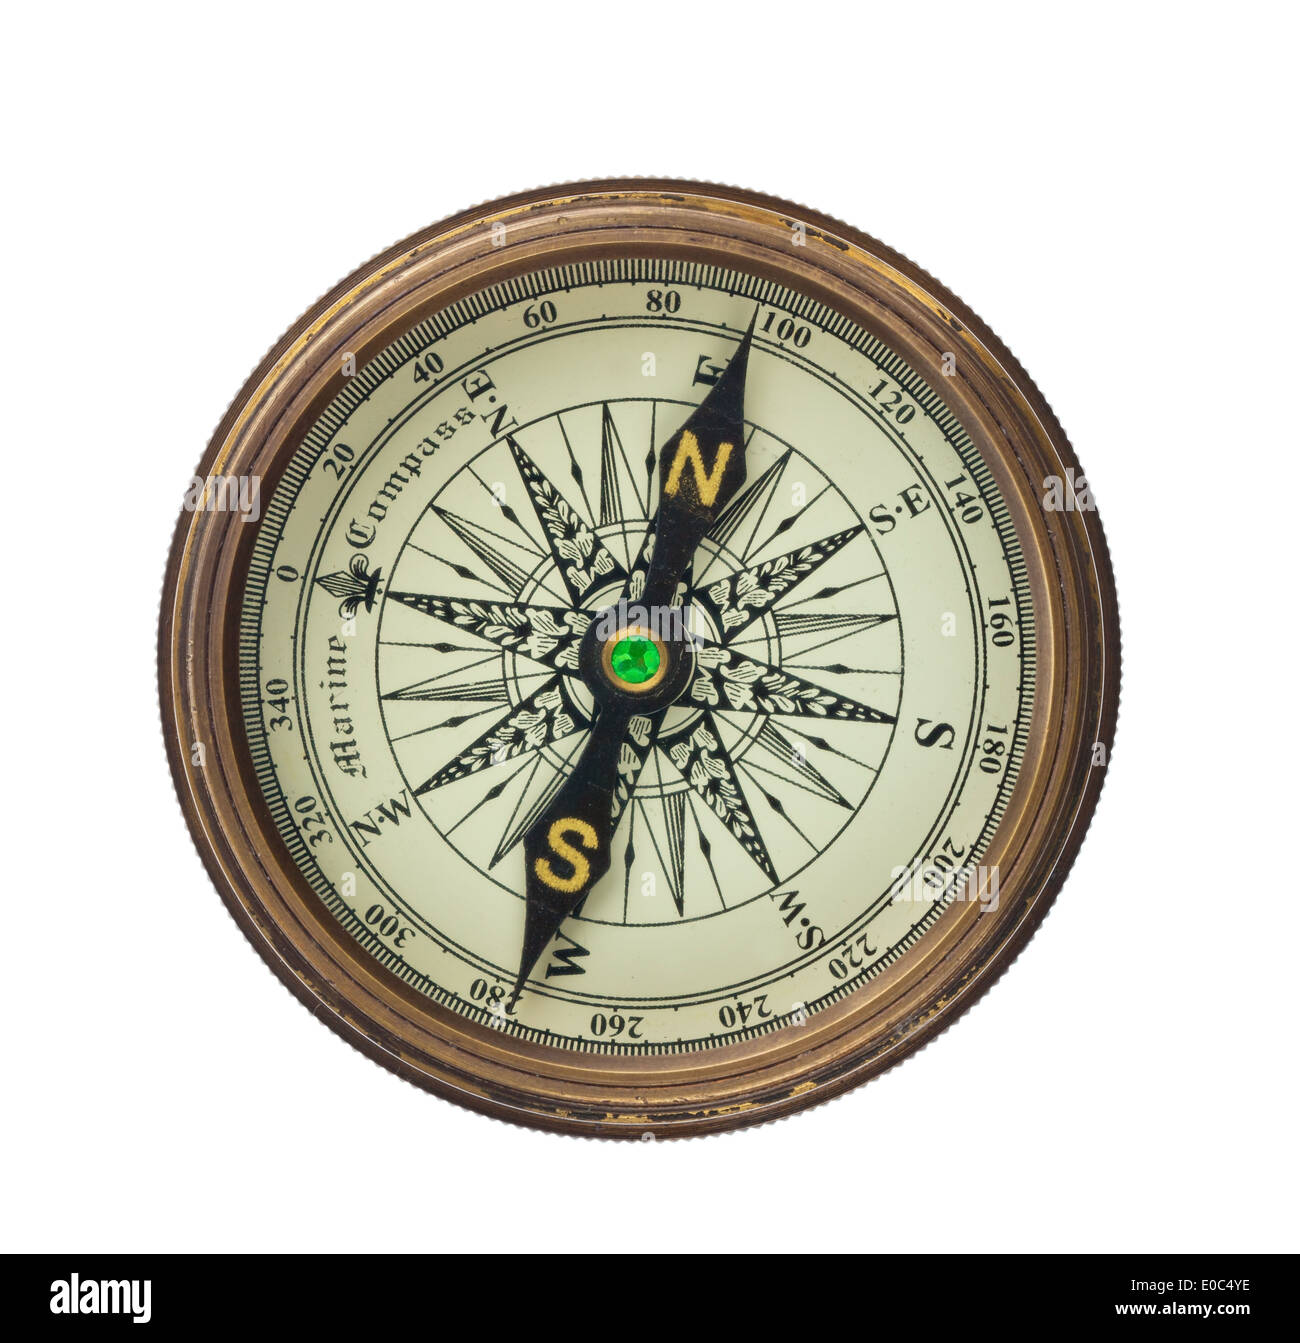 A compass lies on a white background., Ein Kompass liegt auf einem weissem Hintergrund. Stock Photo